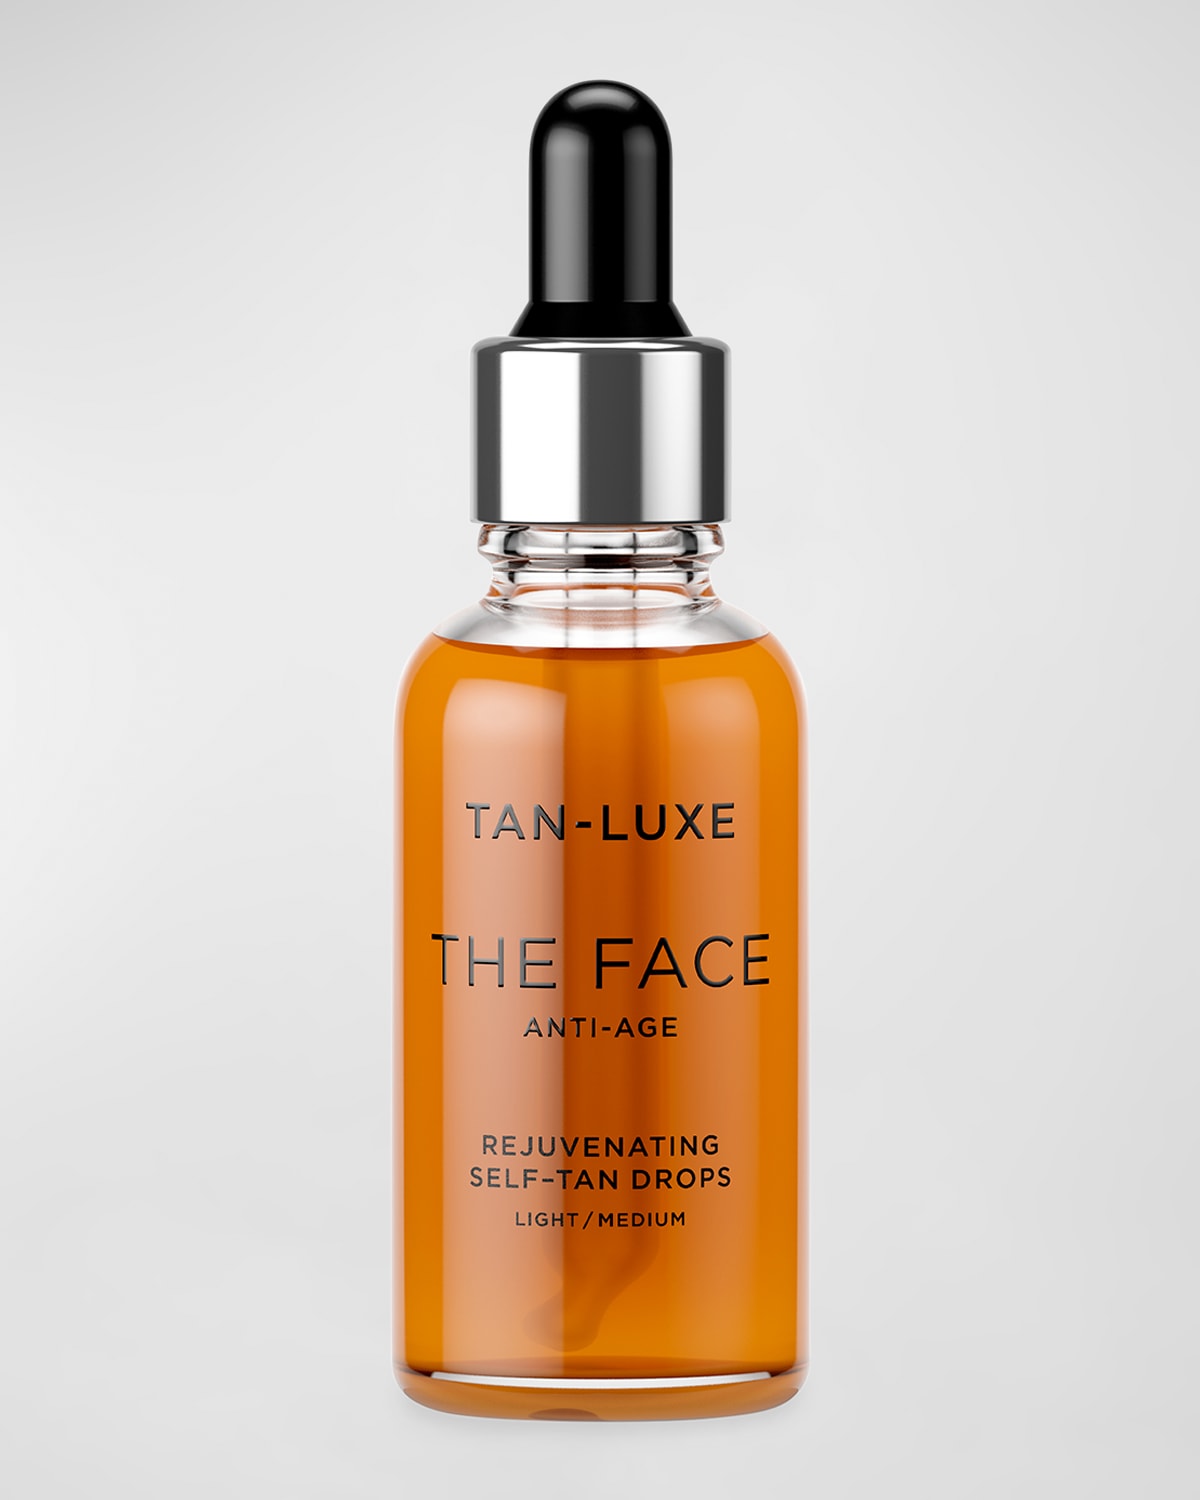 THE FACE: ANTI-AGE Rejuvenating Self-Tan Drops, 1 oz.